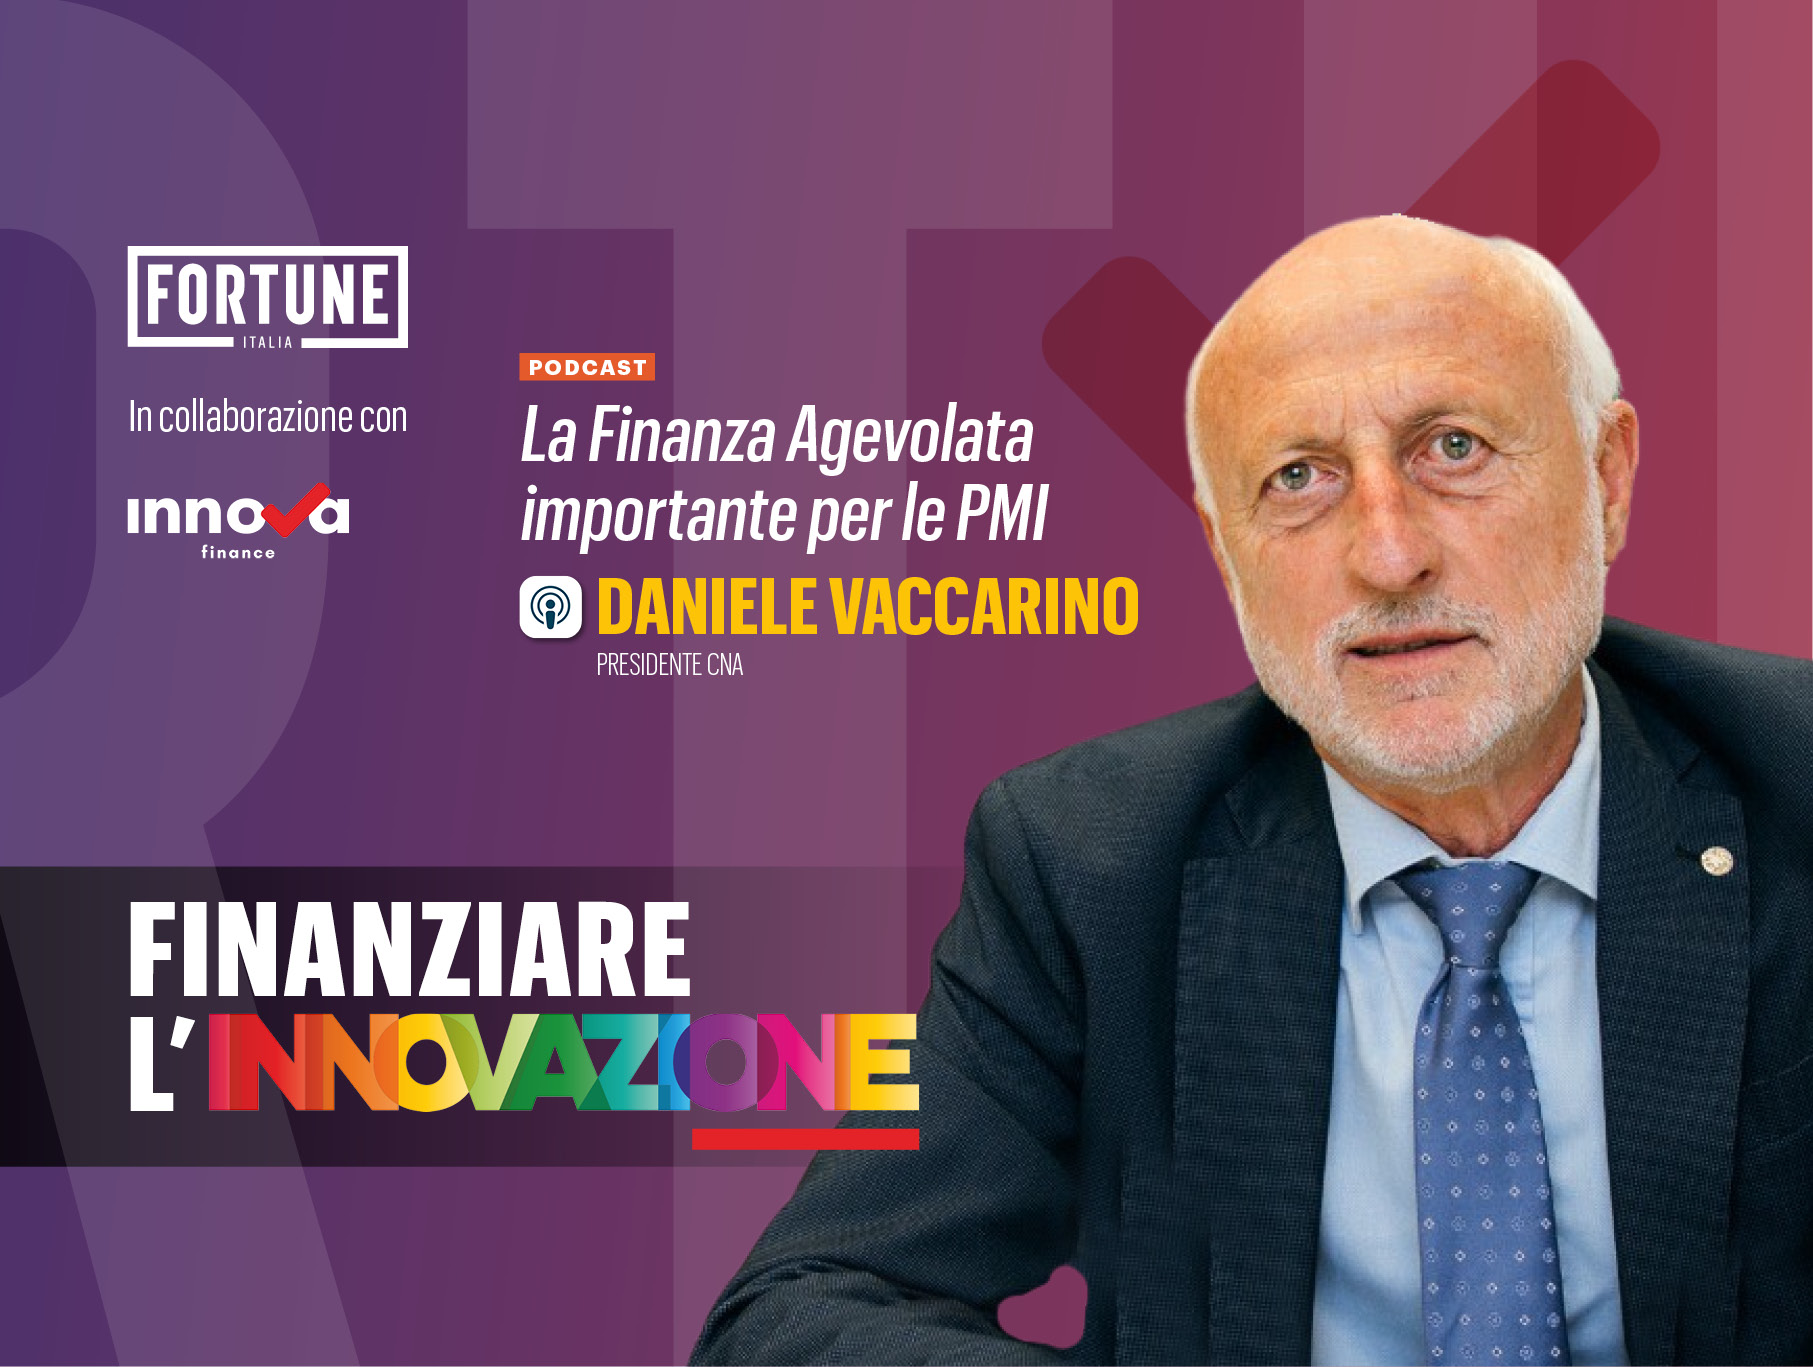 Daniele Vaccarino (Cna): la finanza agevolata importante per le pmi